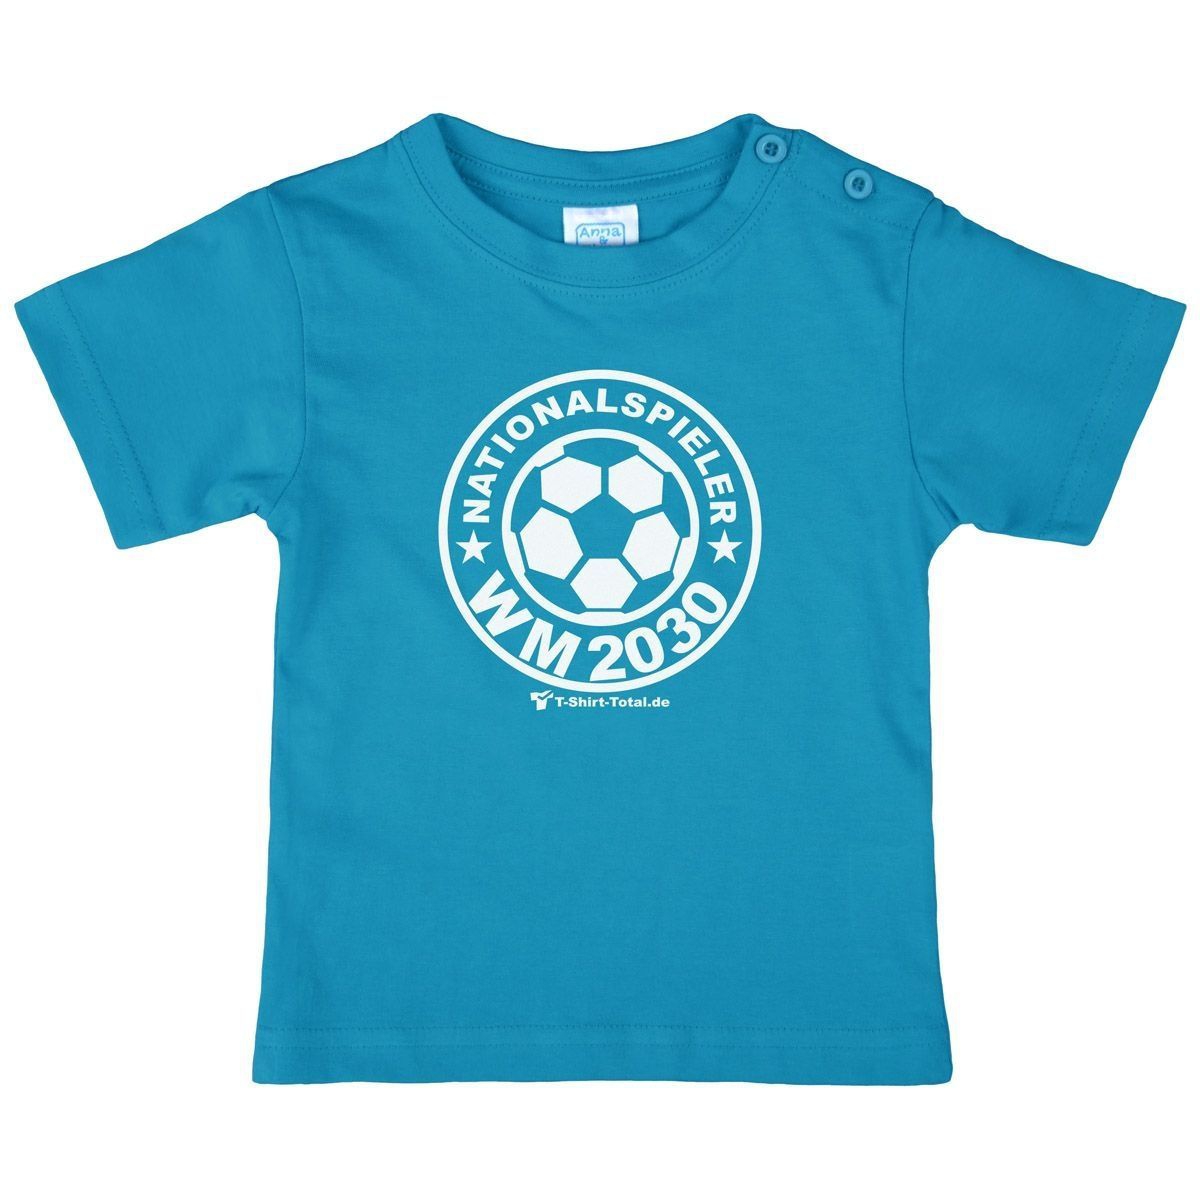 Nationalspieler 2042 Kinder T-Shirt türkis 104